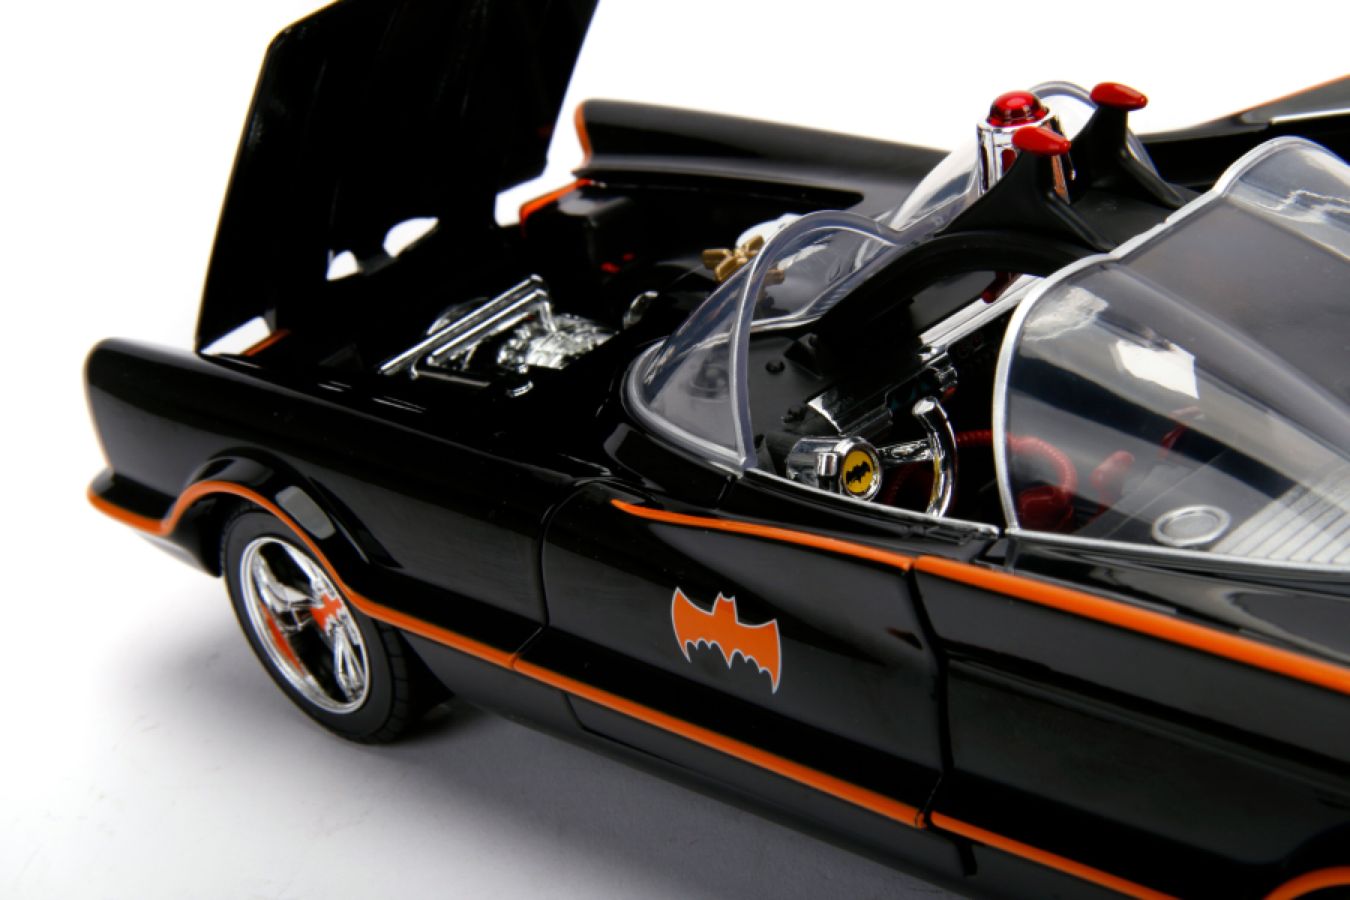 Batman (TV) - Batmobile 1:18 w/Batman